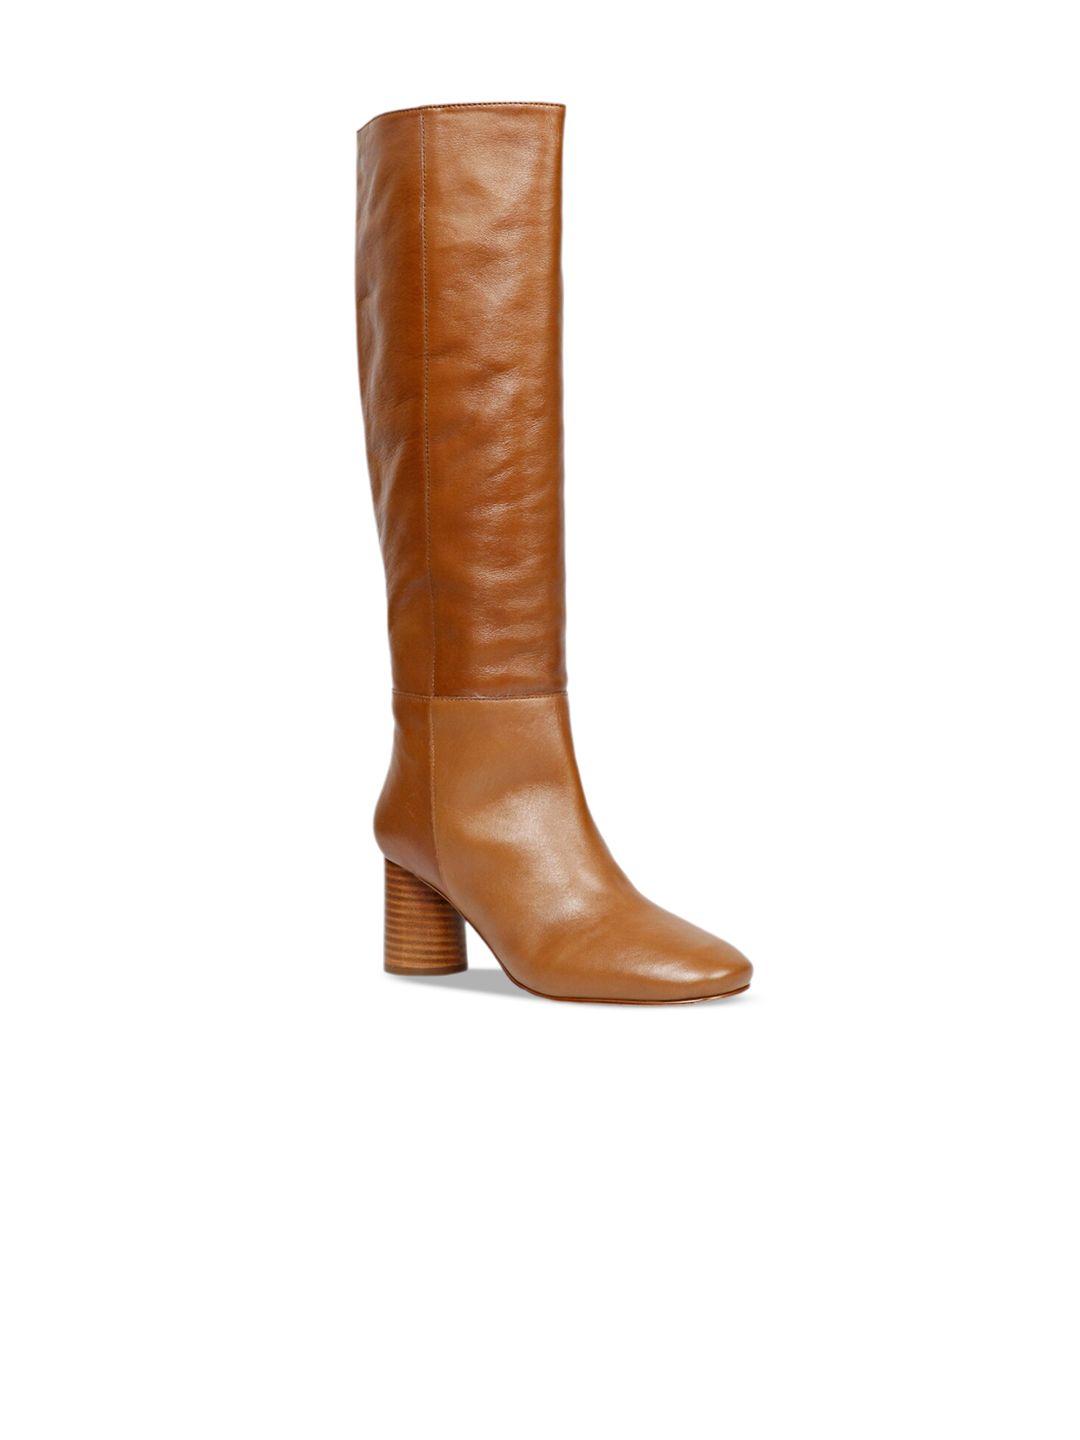 saint-g-women-heeled-leather-regular-boots